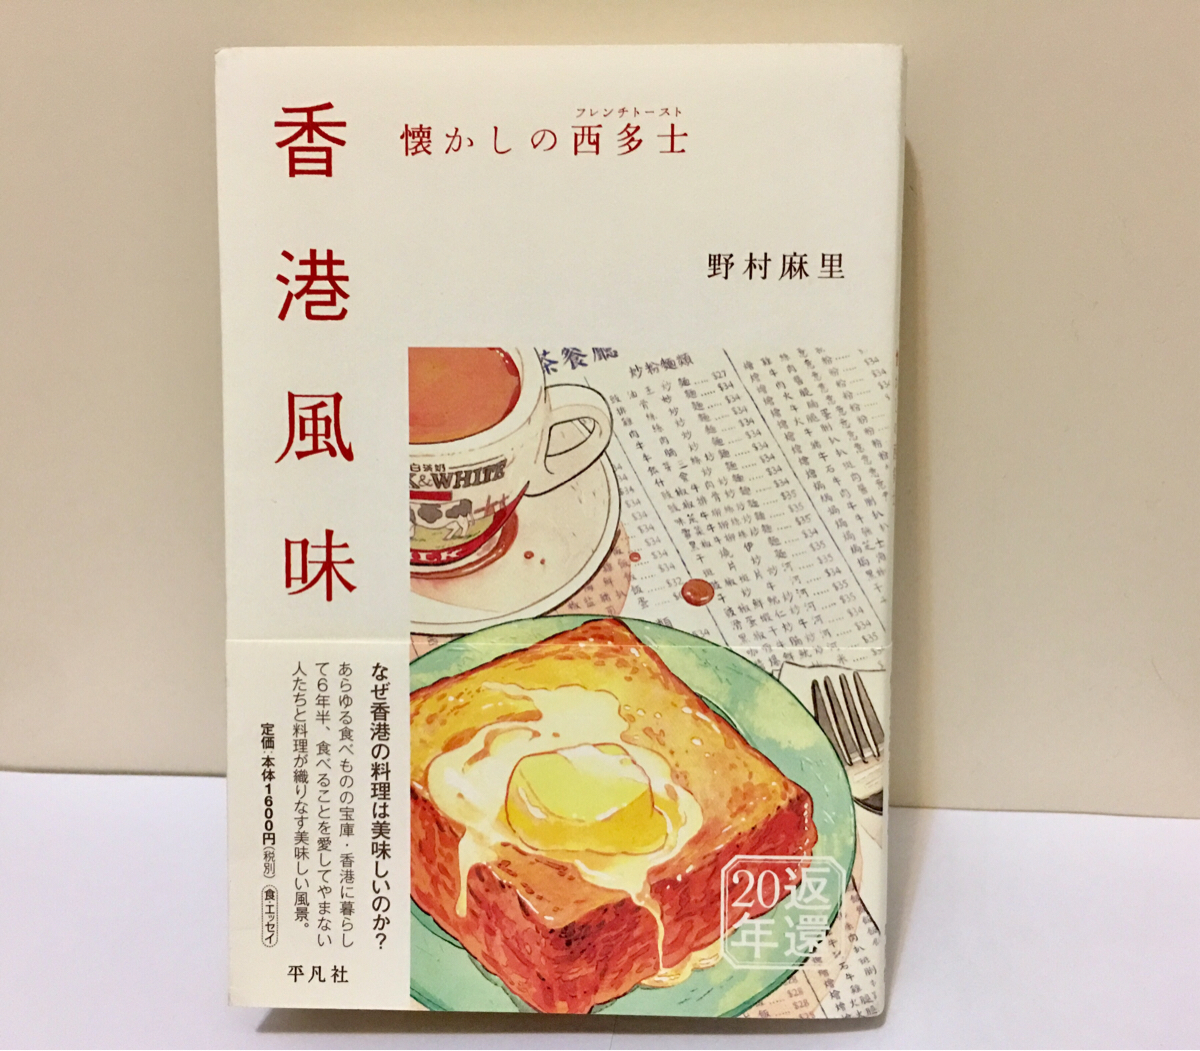 「懐かしの西多士(フレンチトースト)」を読んで自分が懐かしく思う香港の食べ物の暫定ベスト3をあげてみた